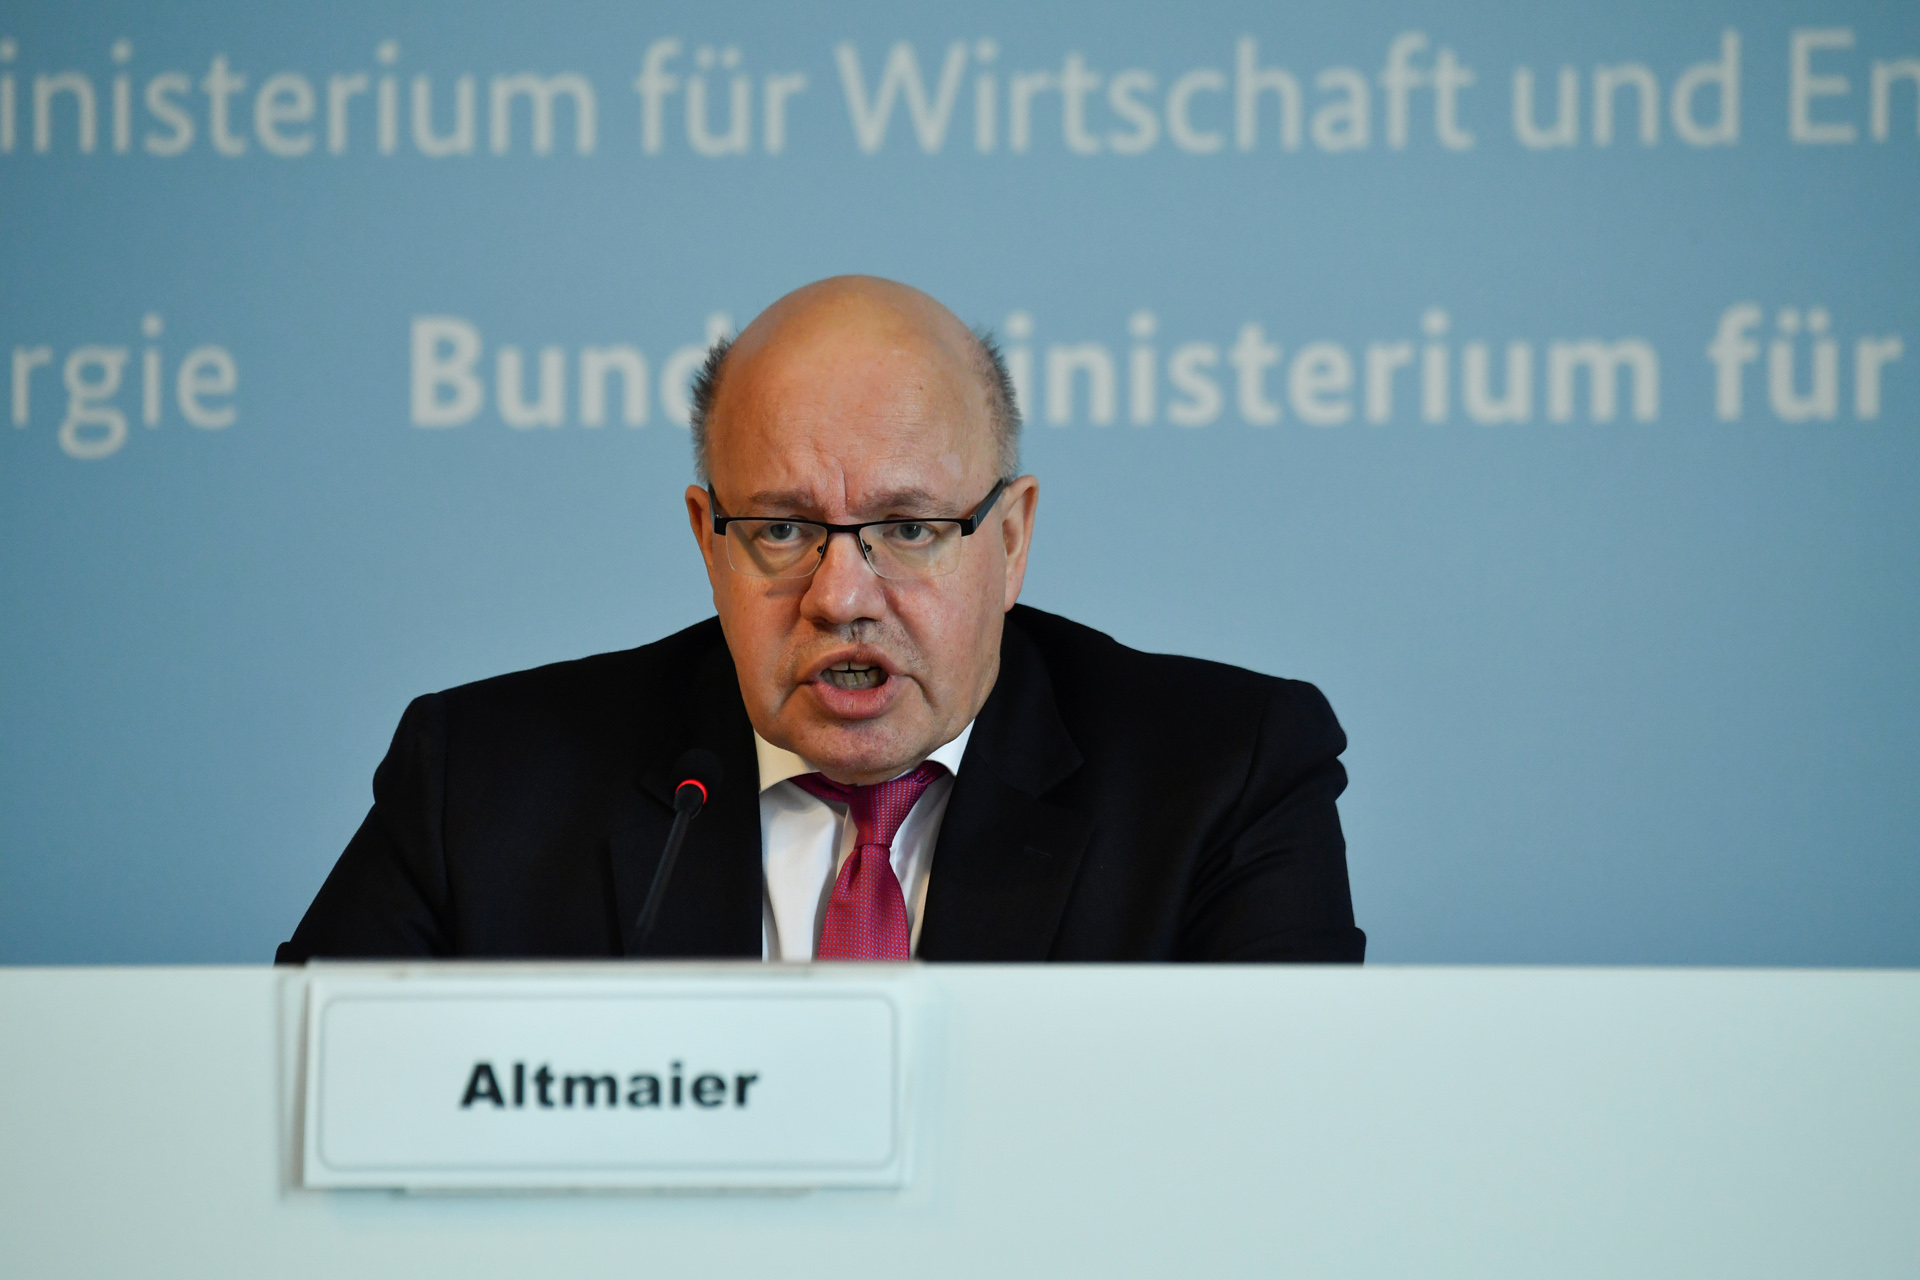 Γερμανία: Υπό όρους η κρατική βοήθεια στις επιχειρήσεις λέει ο ΥΠΟΙΚ, Πέτερ Αλτμάιερ